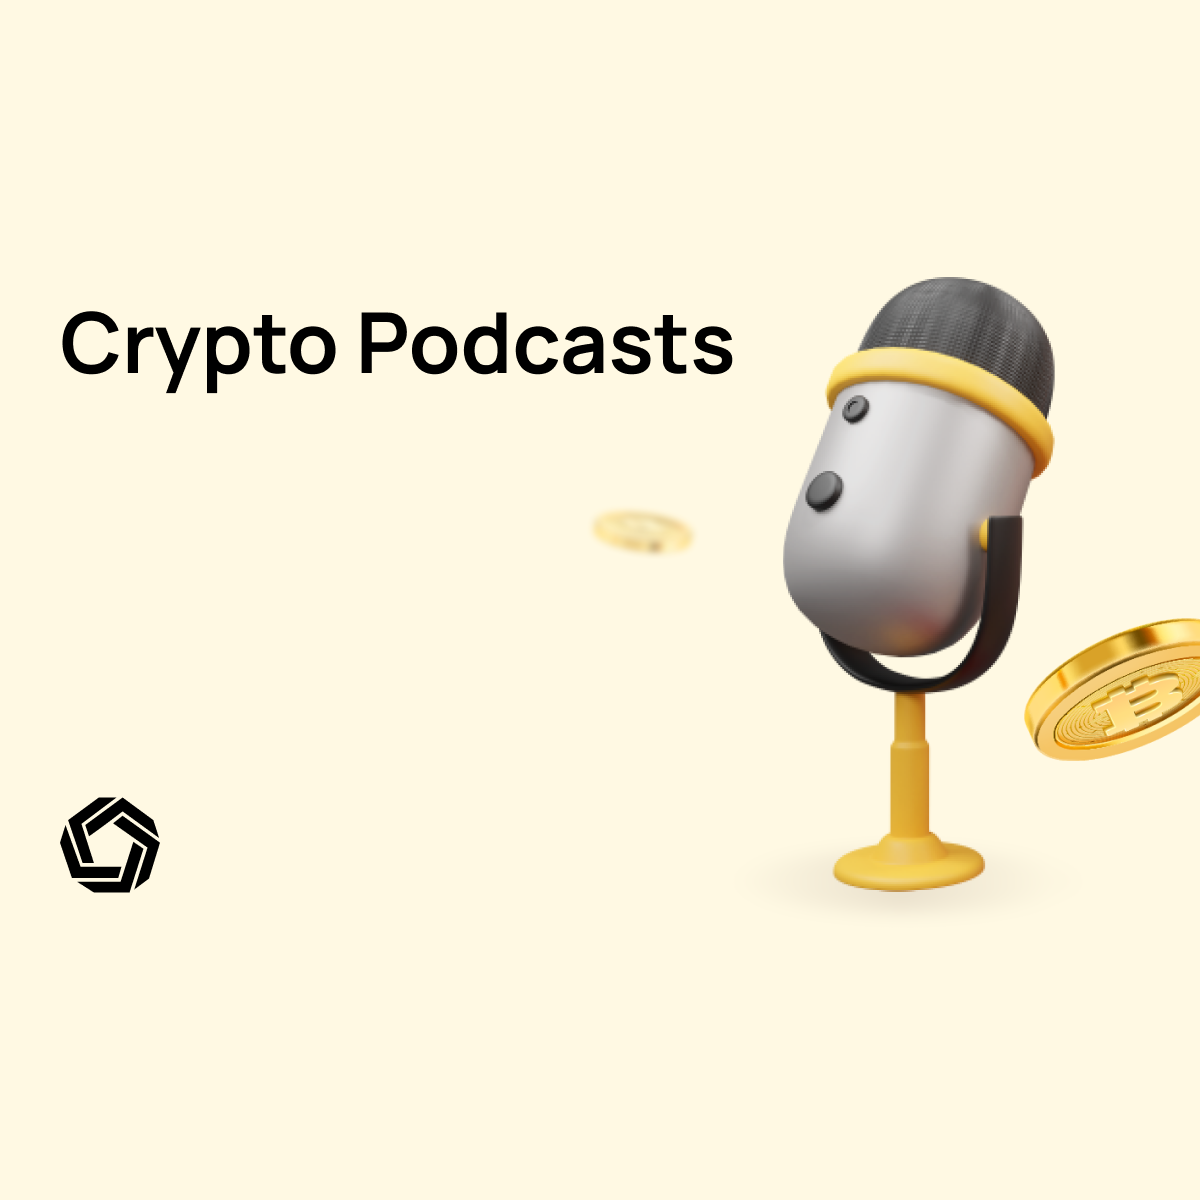 Crypto Podcasts